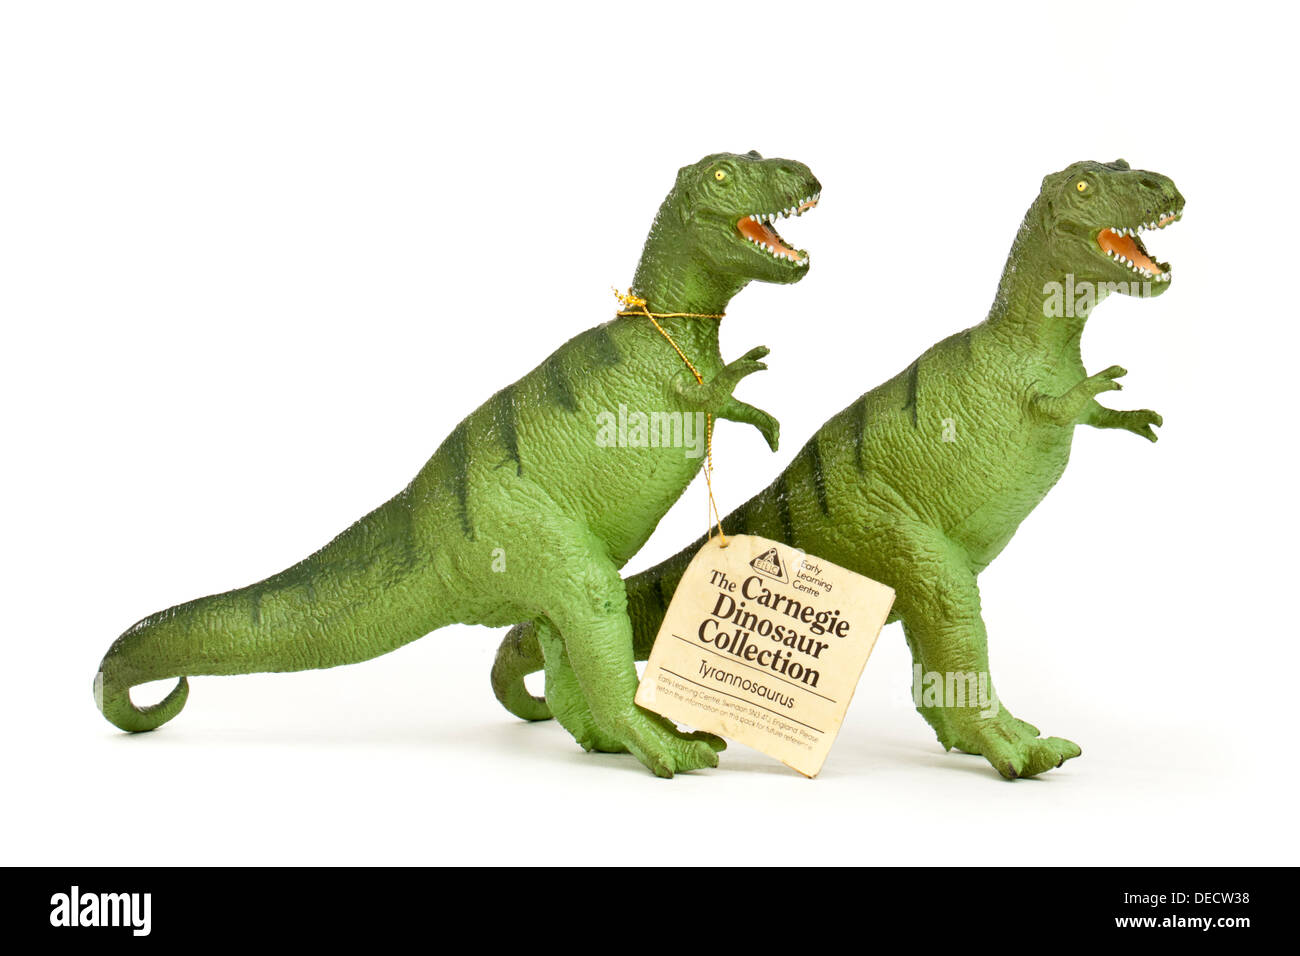 Dinosaur toys immagini e fotografie stock ad alta risoluzione - Alamy